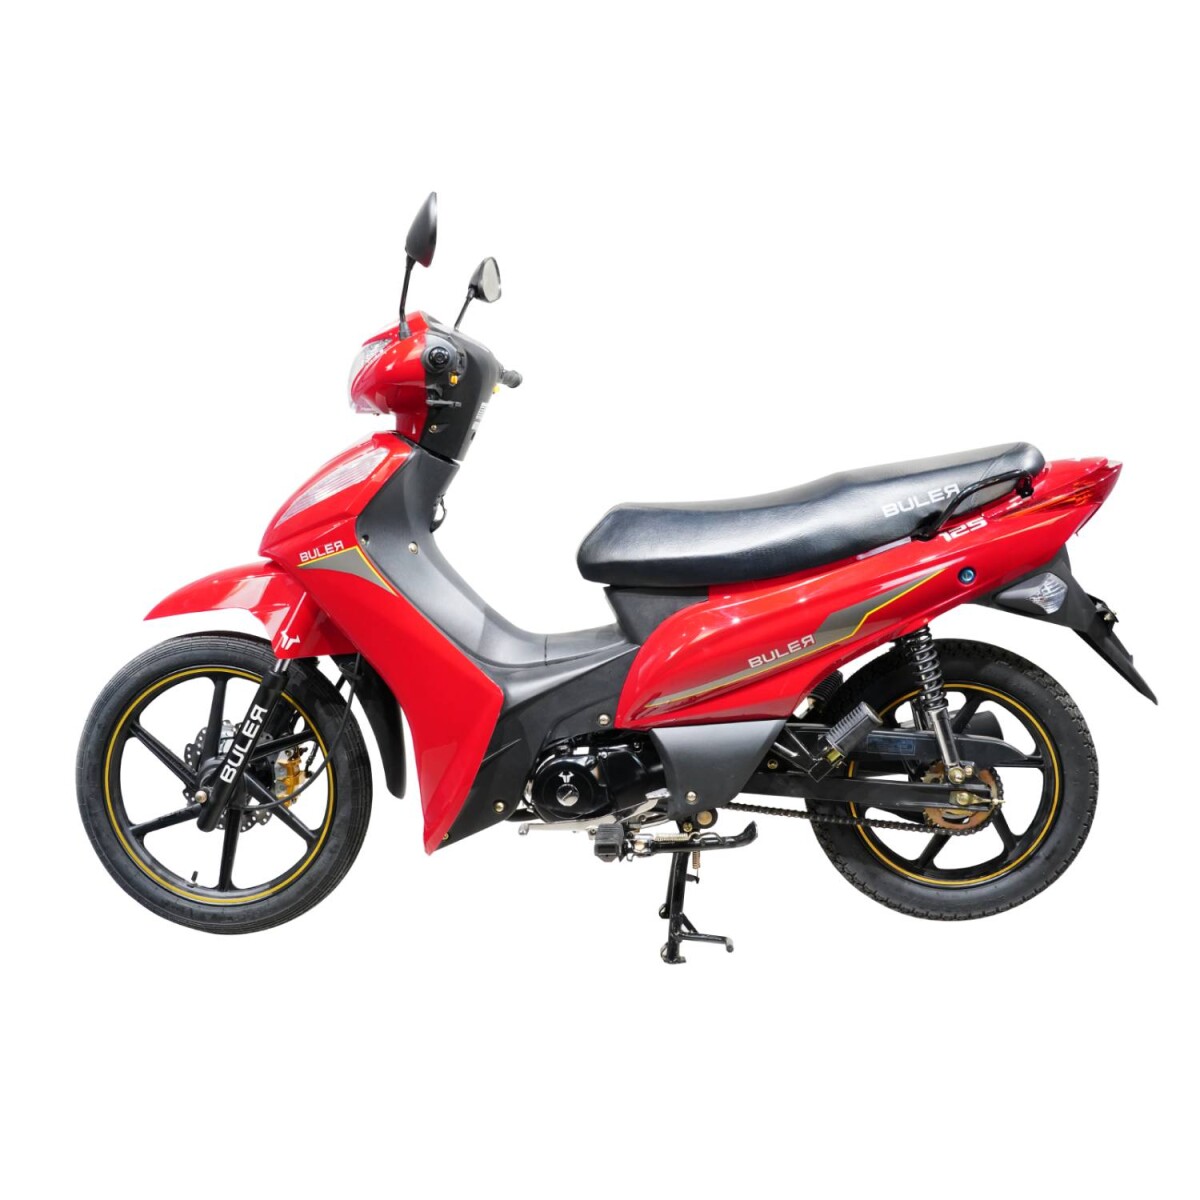 Motocicleta Buler VX 125cc con Aleación - Rojo 